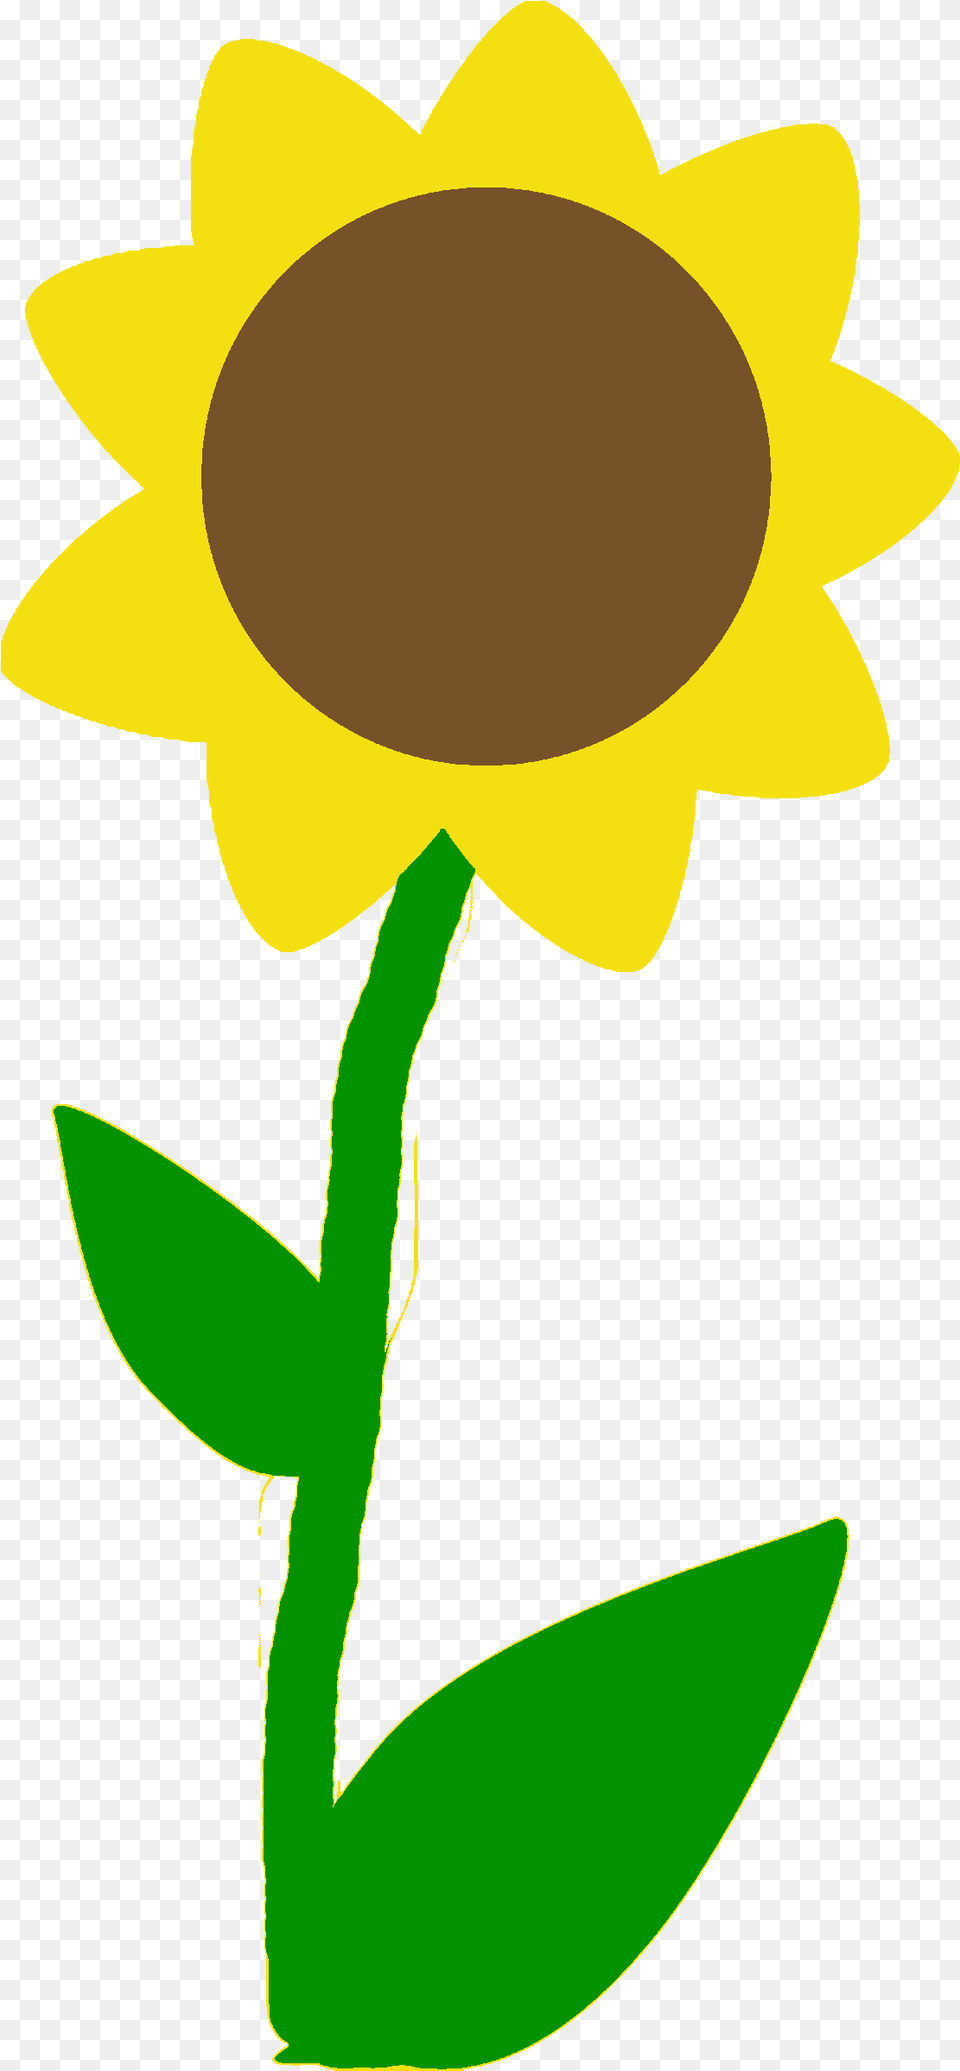 Dibujos De Flores Dibujos De Una Planta Facil, Flower, Plant, Sunflower, Person Png Image